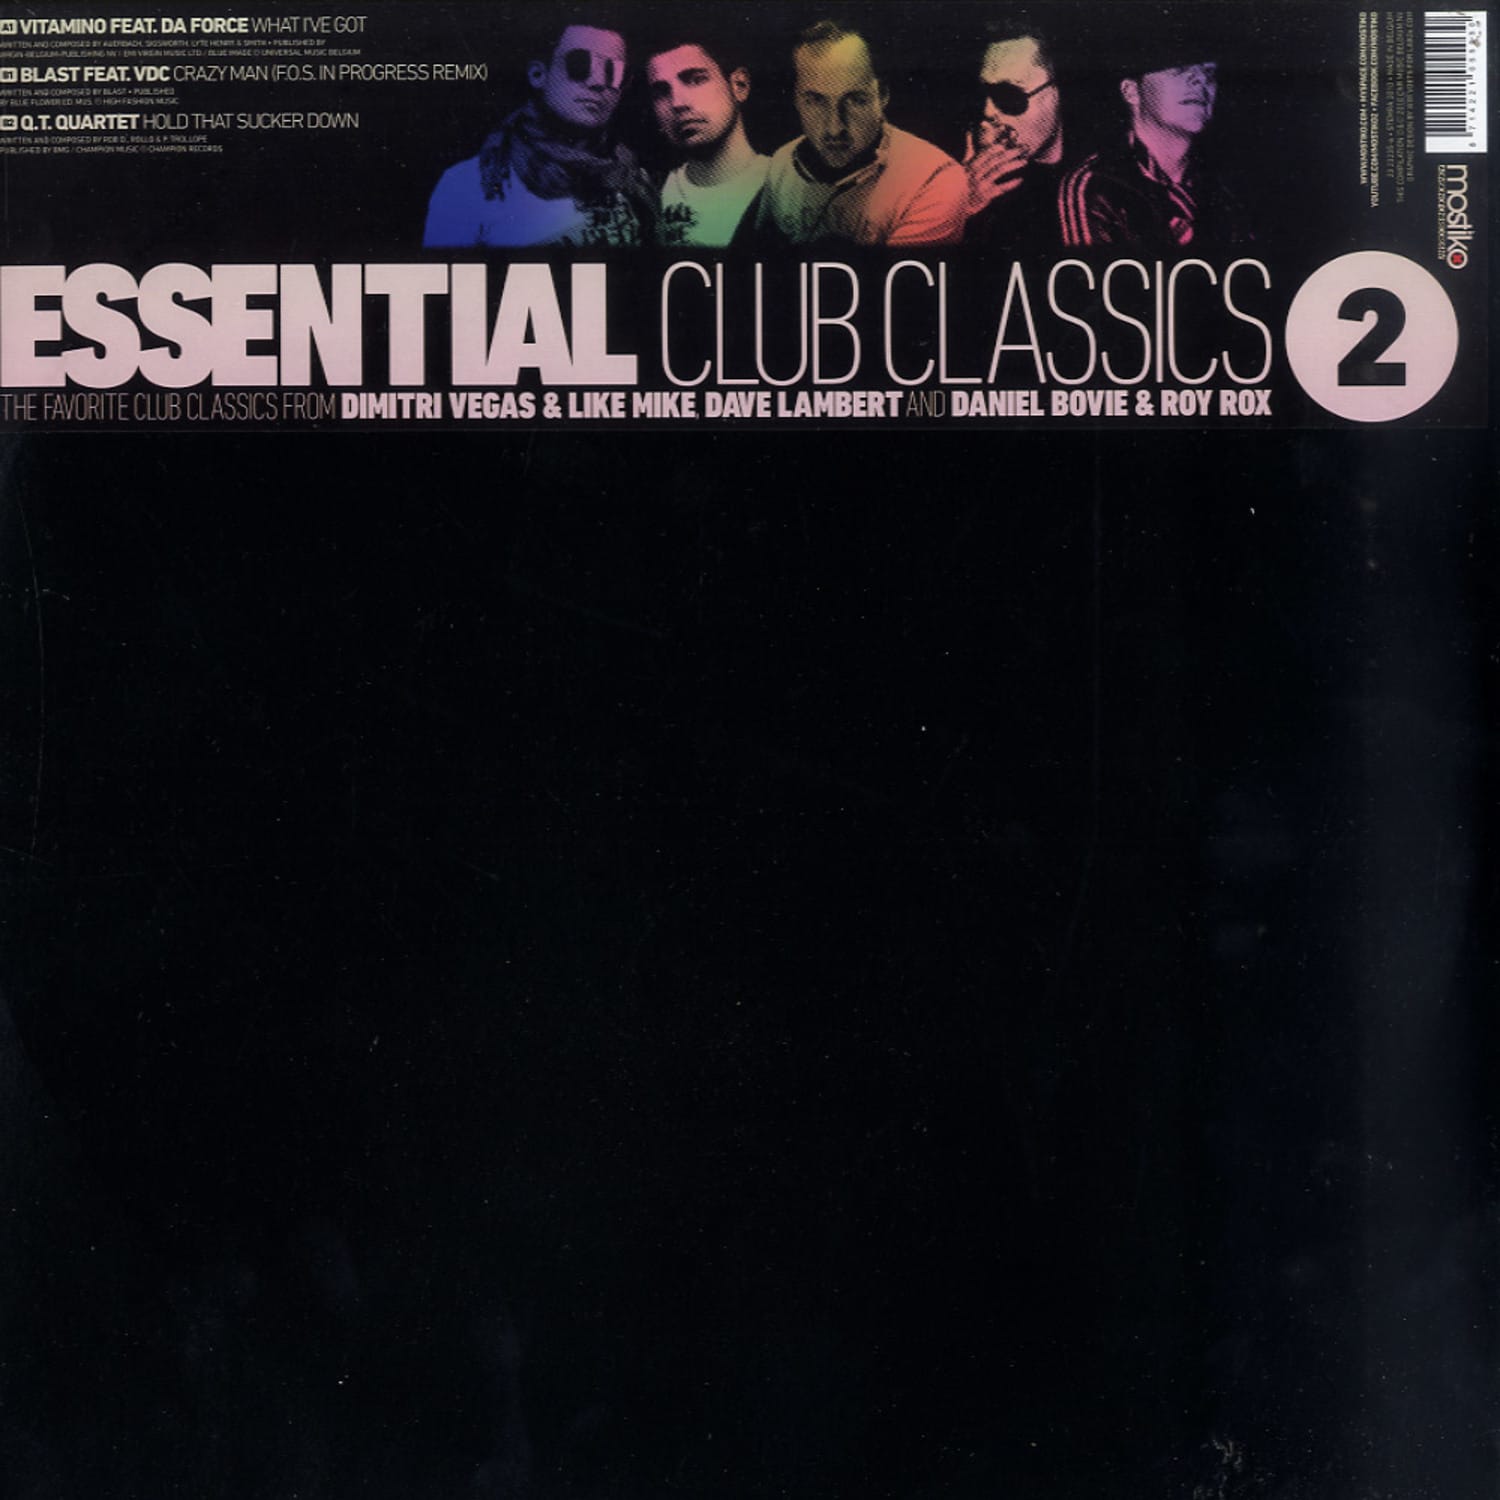 Vitamino / Blast / Q.T. Quartet - ESSENTIAL CLUB CLASSICS 2